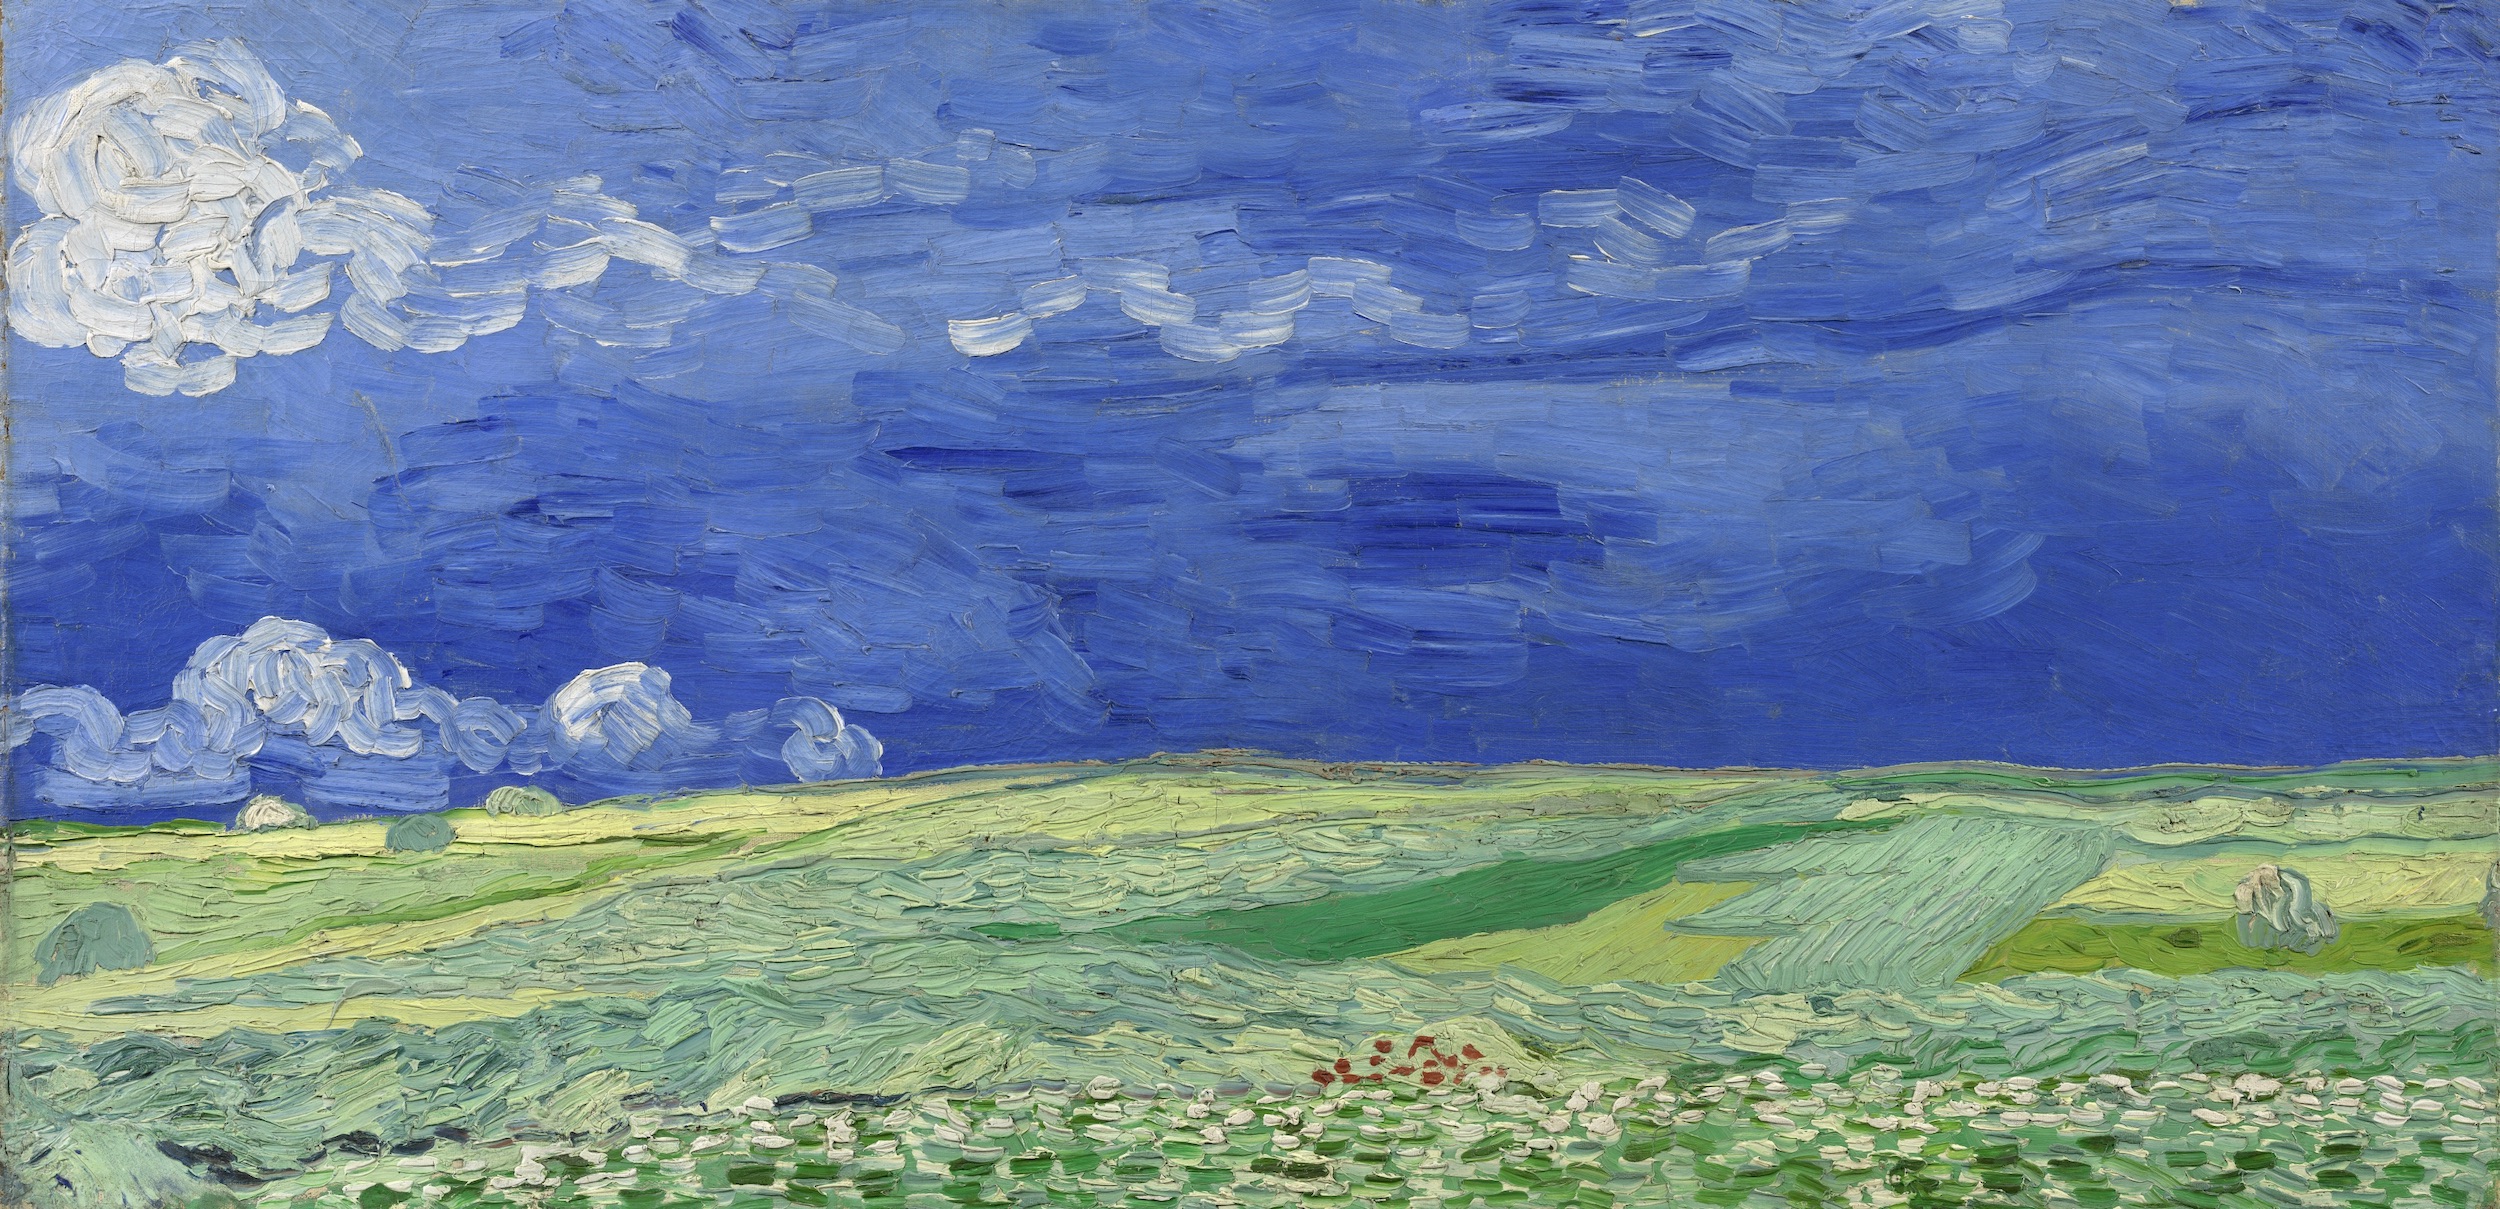 Lan de grâu și nori de furtună by Vincent van Gogh - iulie 1890 - 50.4 x 101.3 cm 